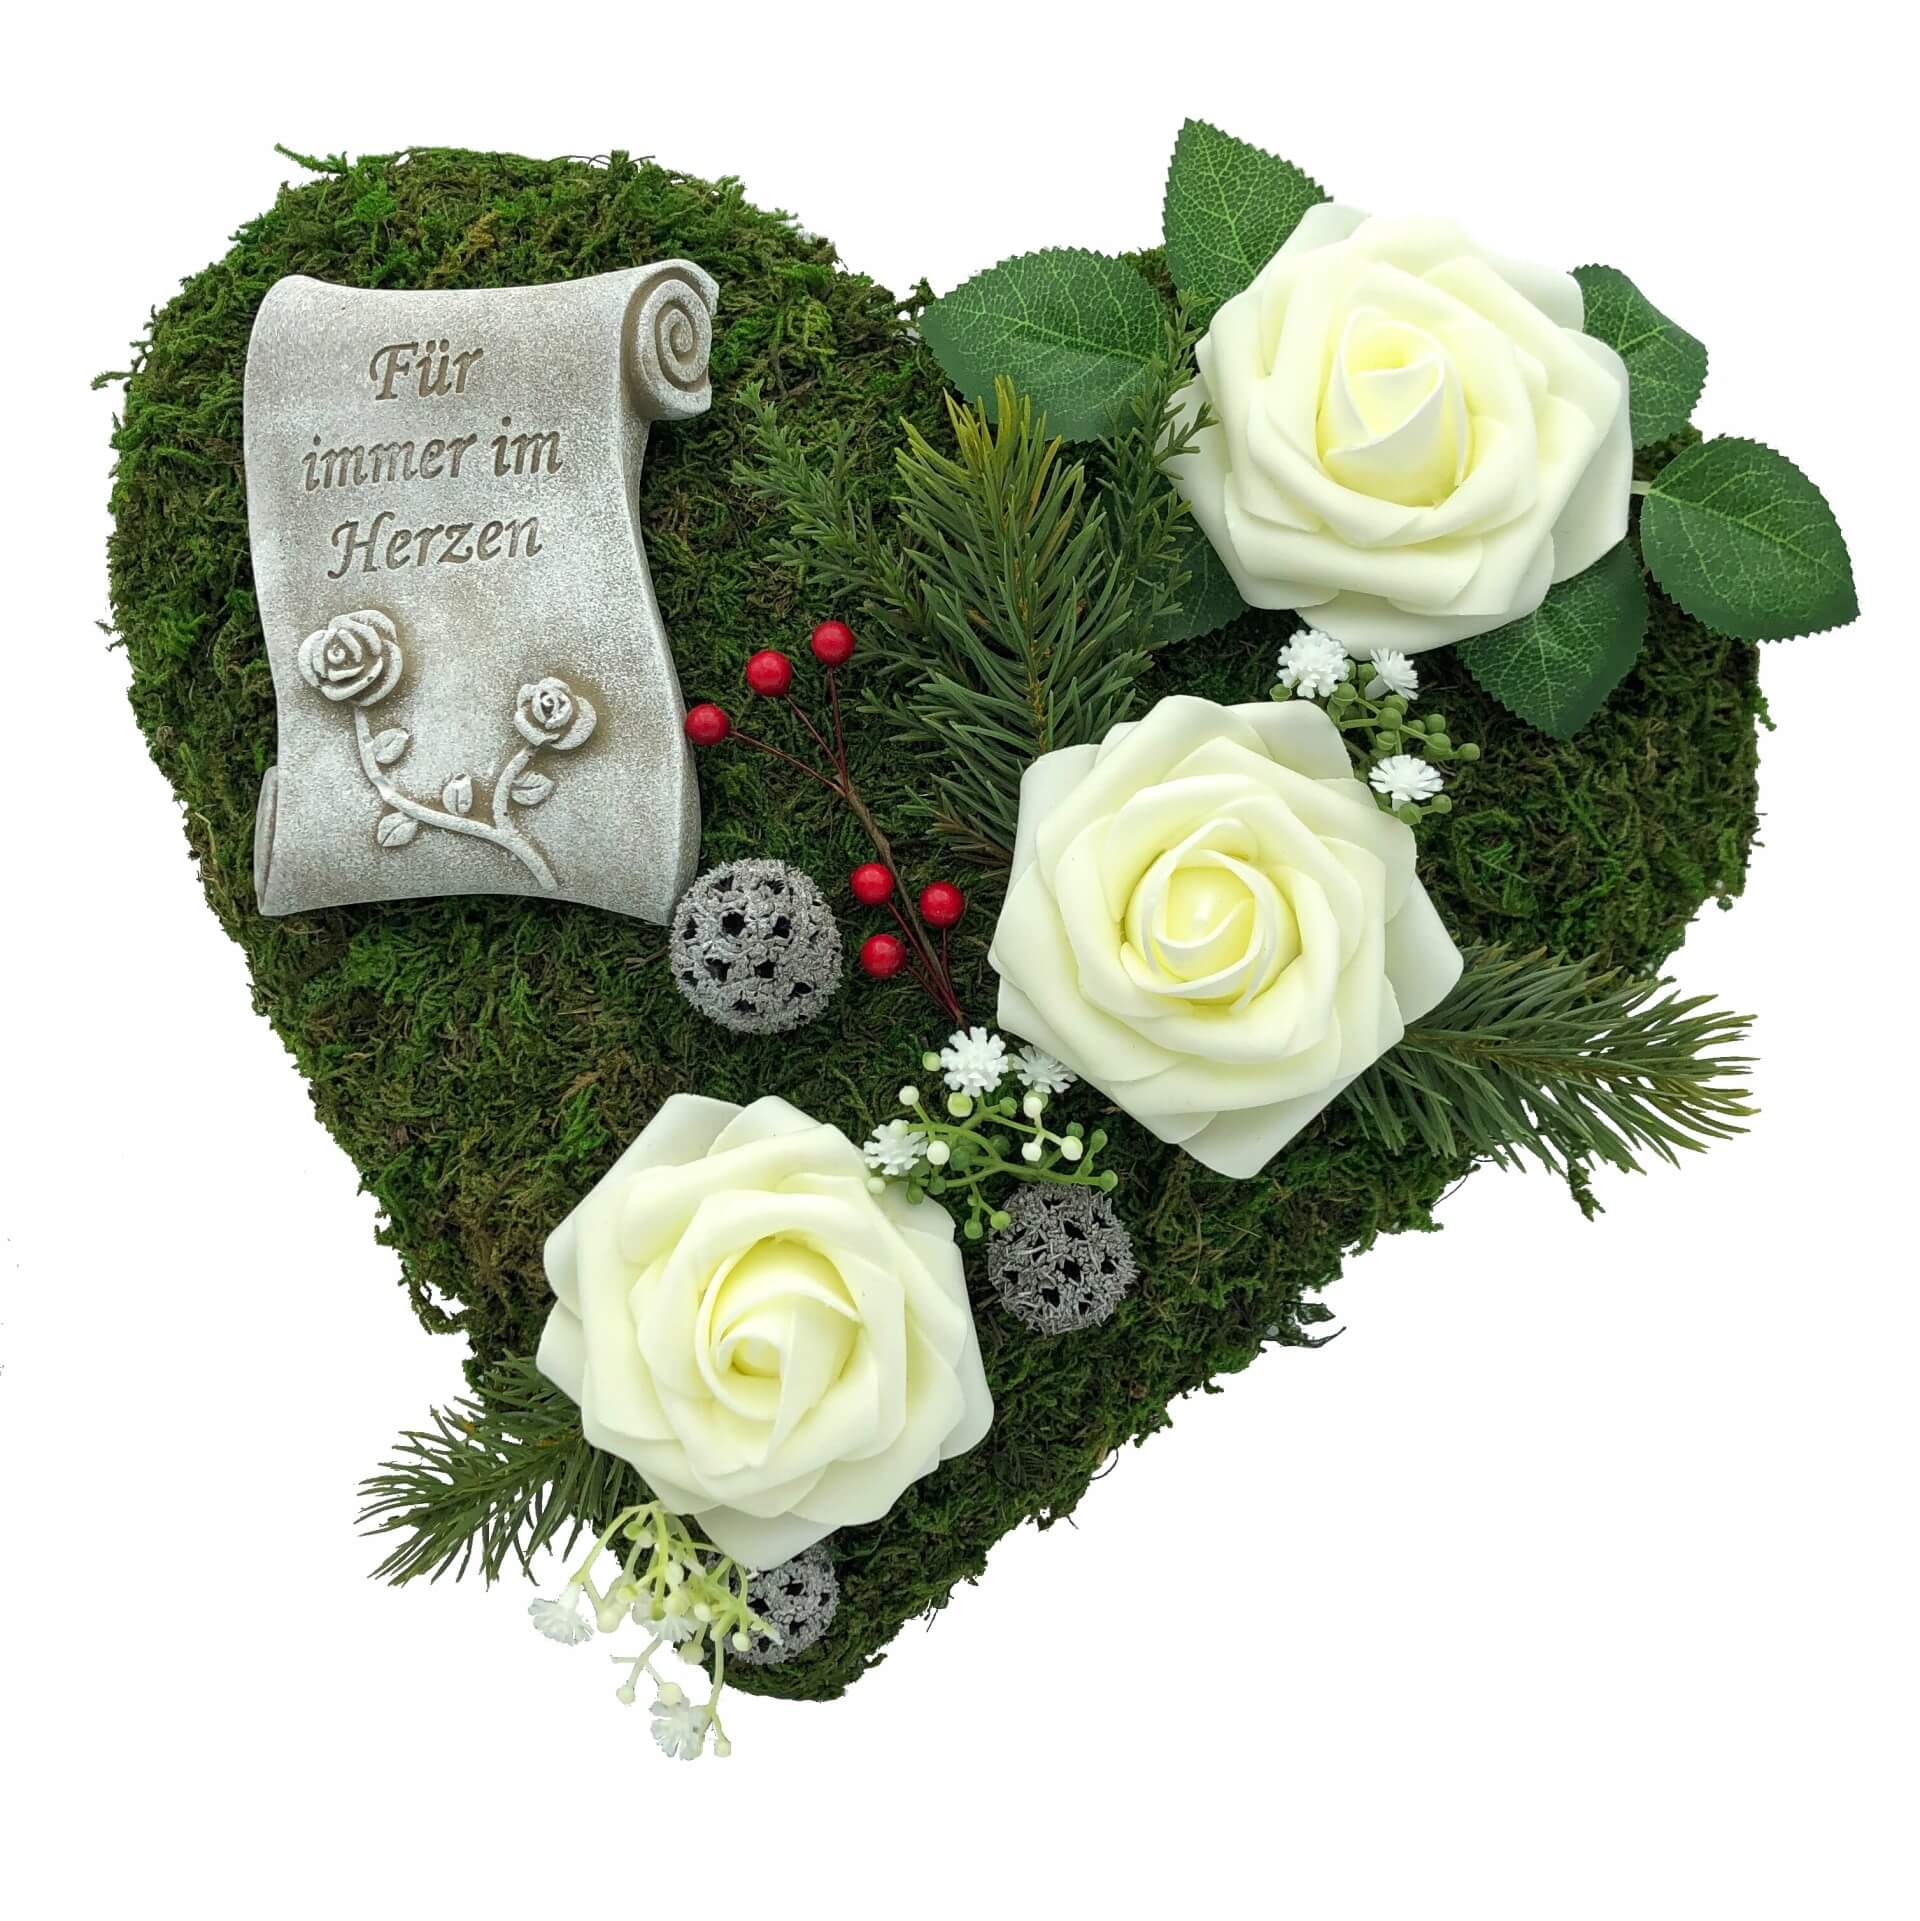 Grabgesteck "Für immer im Herzen" 30cm 3 weiße Rosen